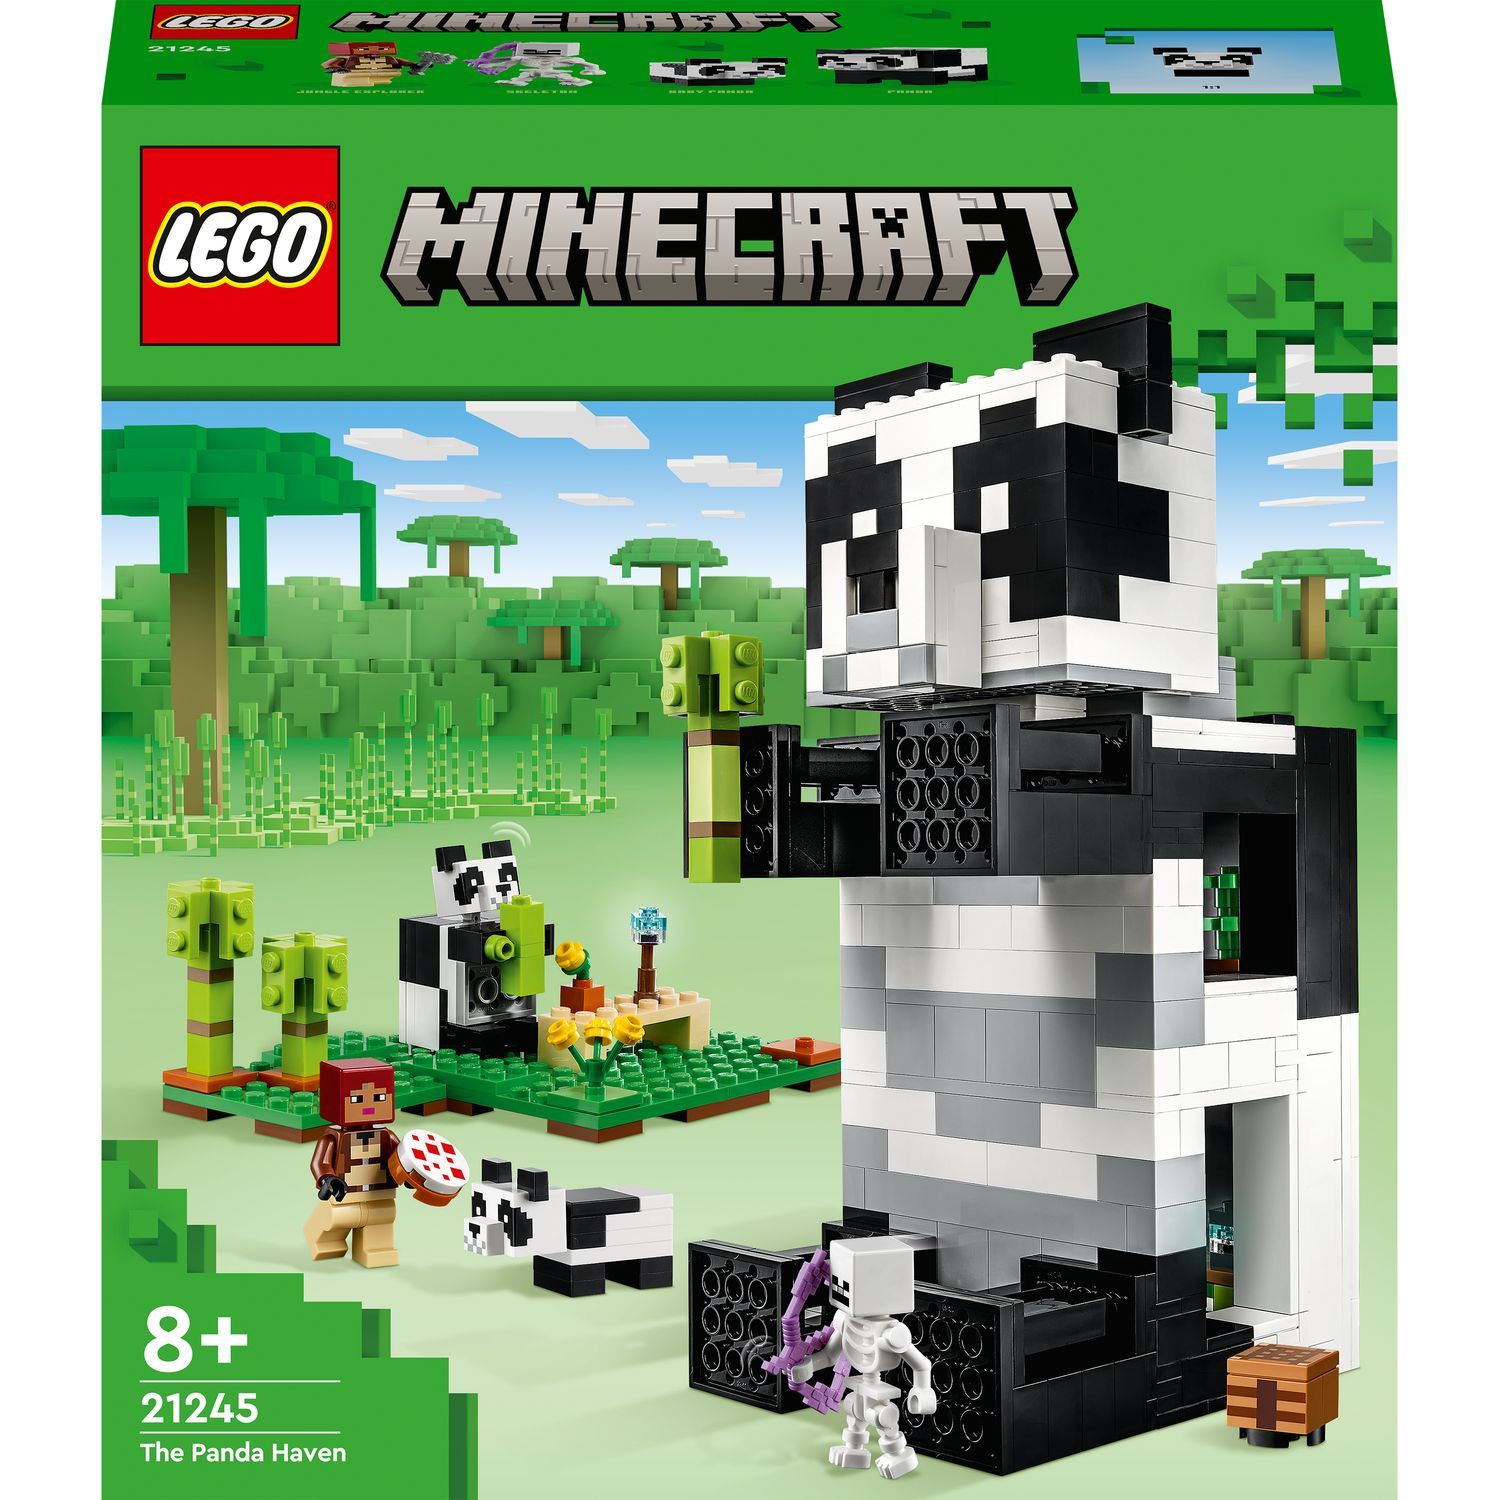 LEGO® 21178 Minecraft Le Refuge du Renard, Jouet de Construction